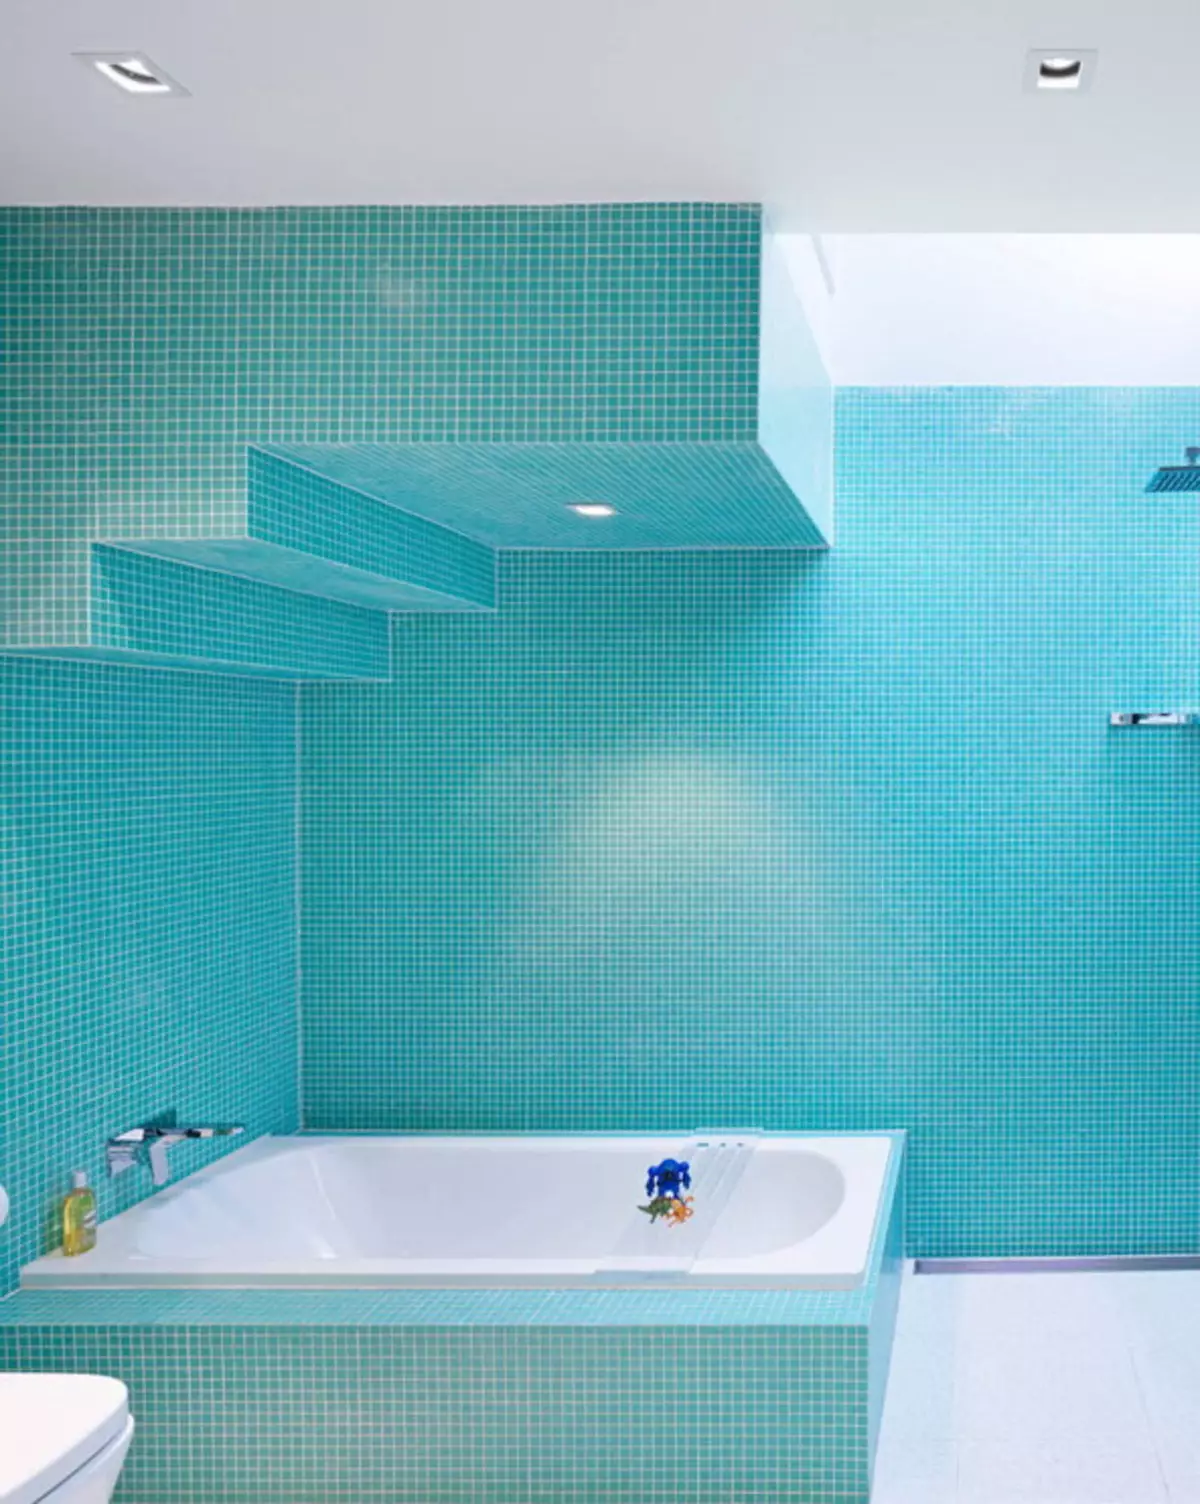 ห้องน้ำสีเขียวขุ่น (61 รูป): ตัวอย่างของการออกแบบห้องน้ำในสีนี้ เราเข้าใจในสีสร้างการตกแต่งภายในที่สวยงาม 10203_46